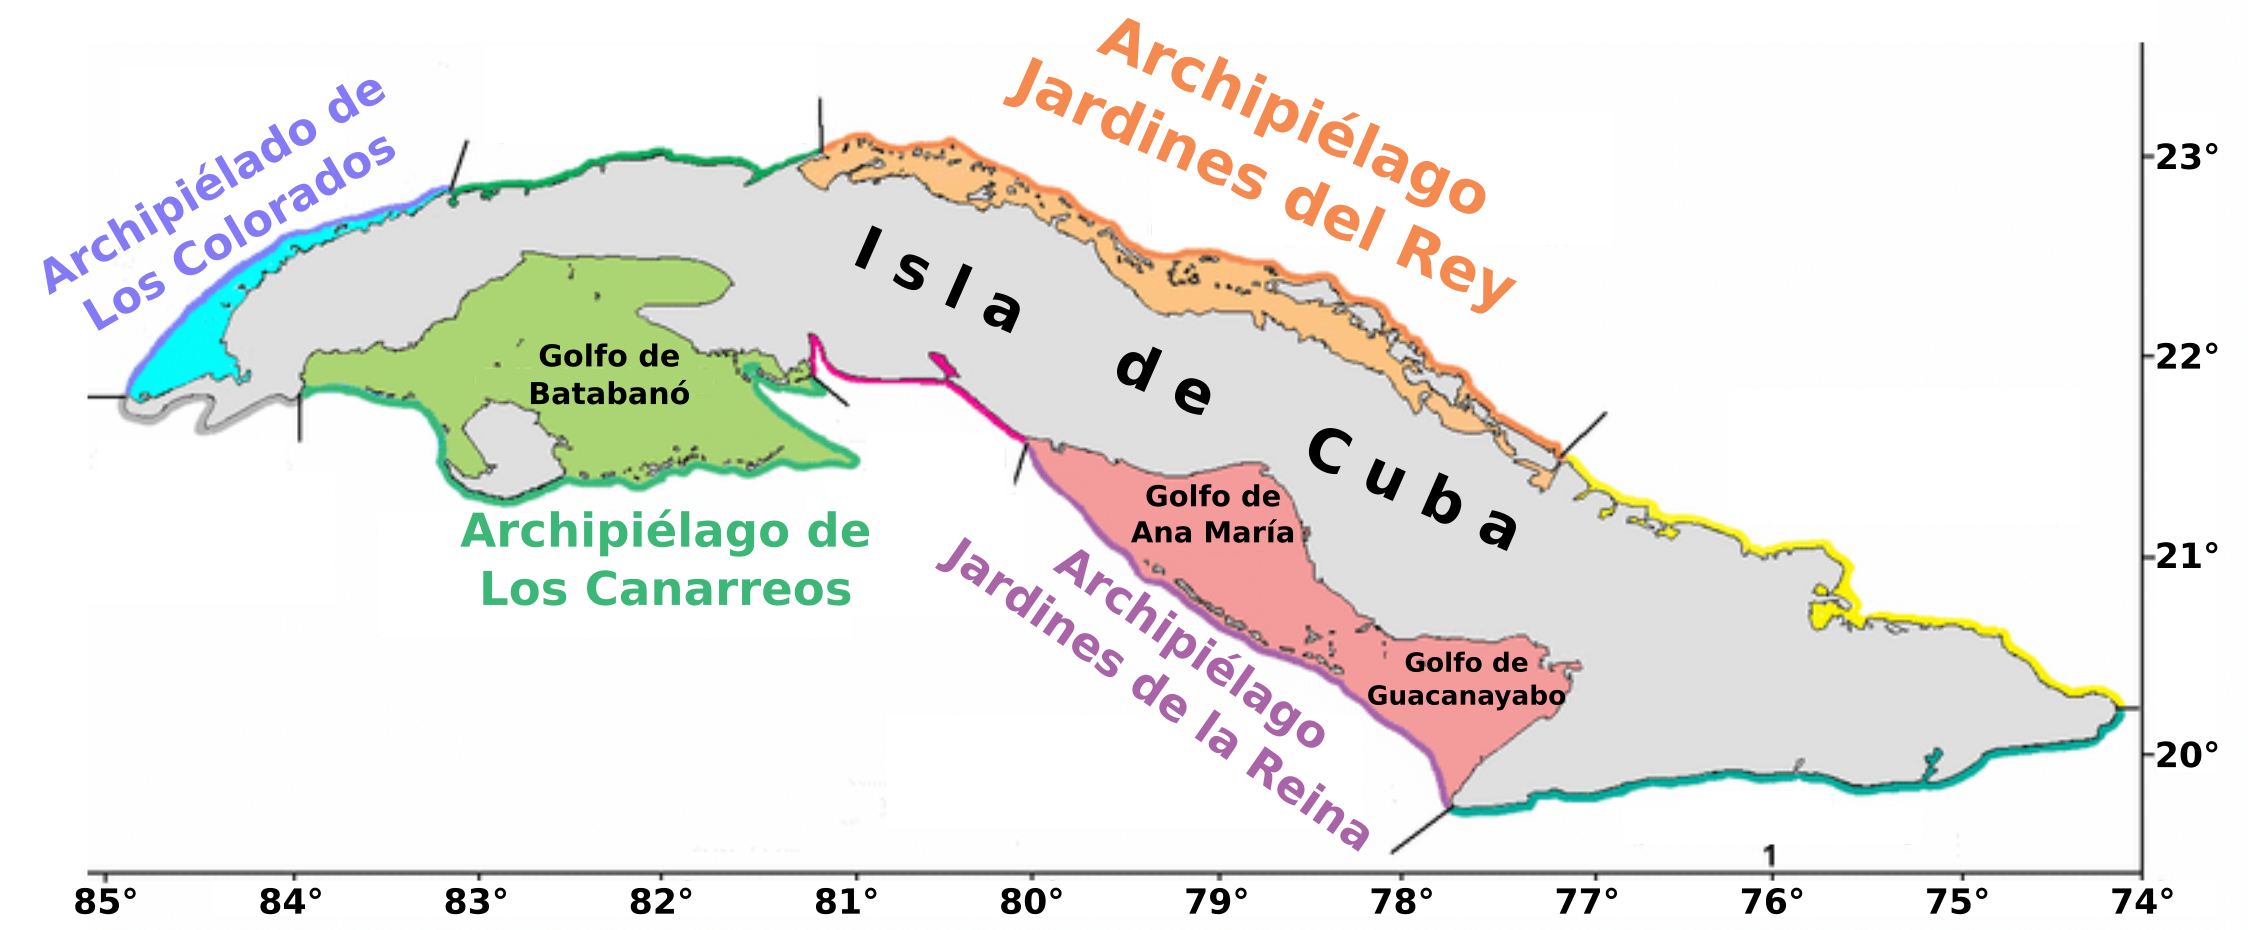 La Isla de Cuba y sus archipiélagos adyacentes